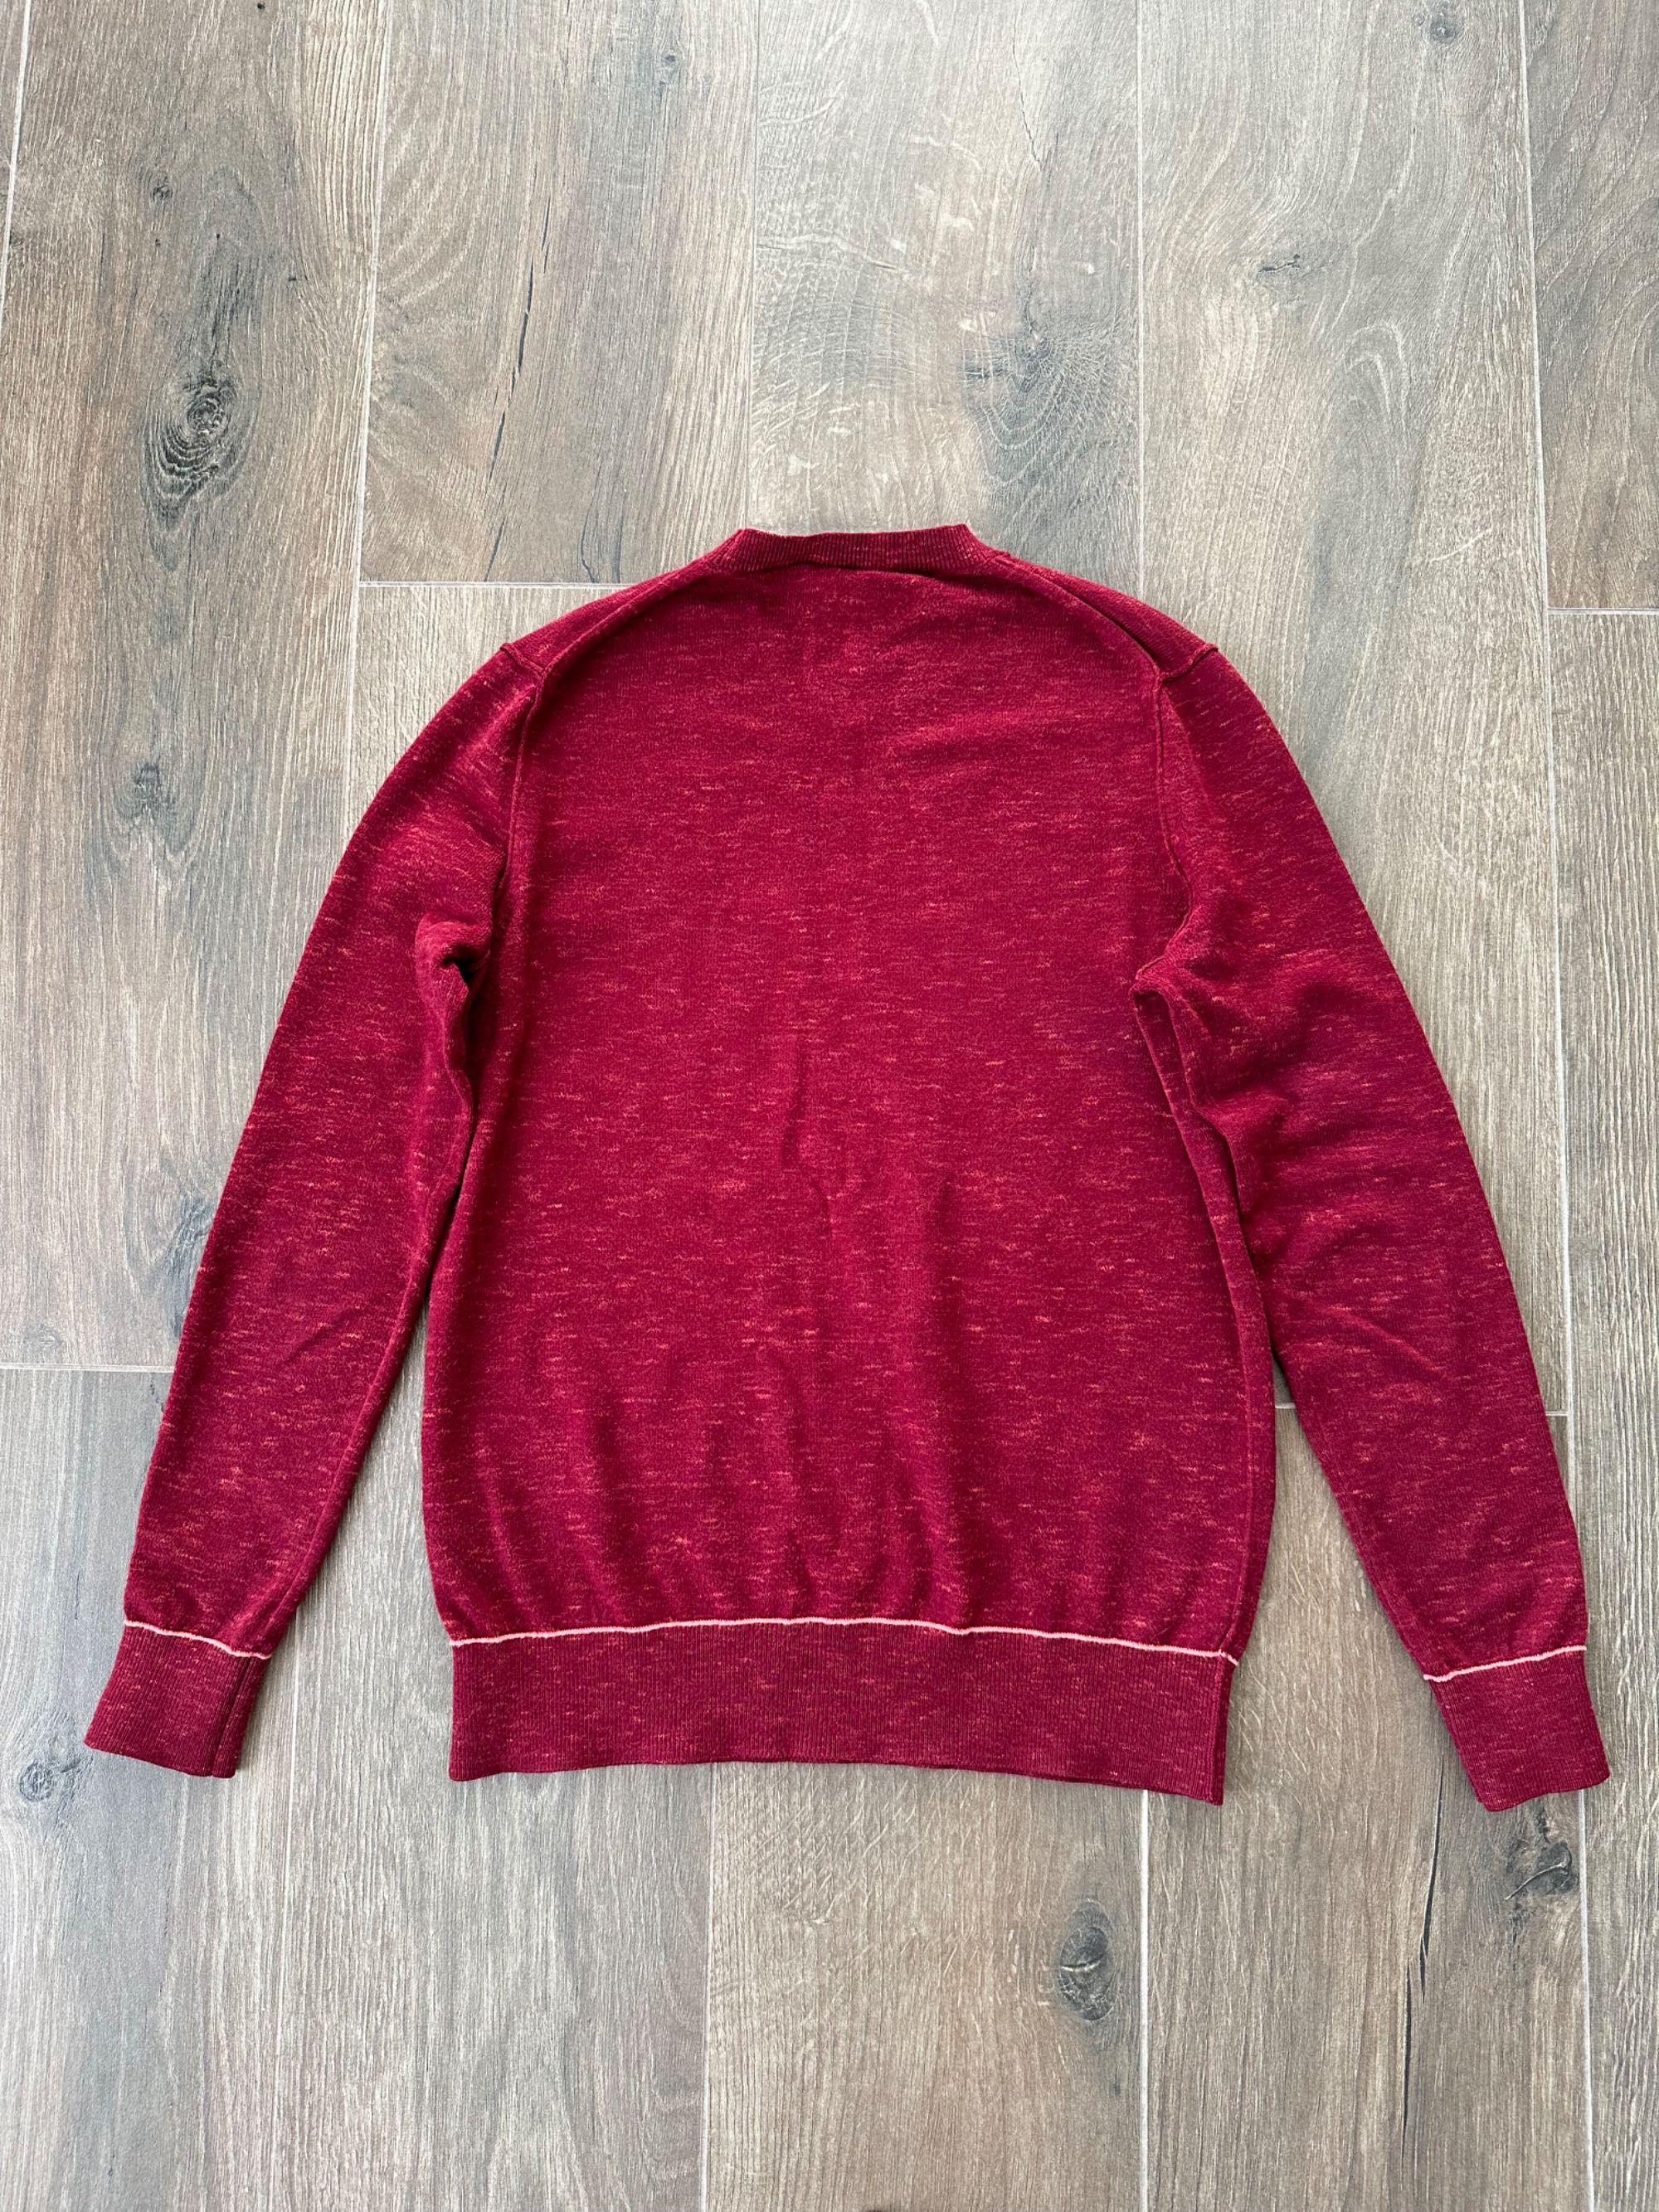 Женский свитер кофта Lacoste размер S